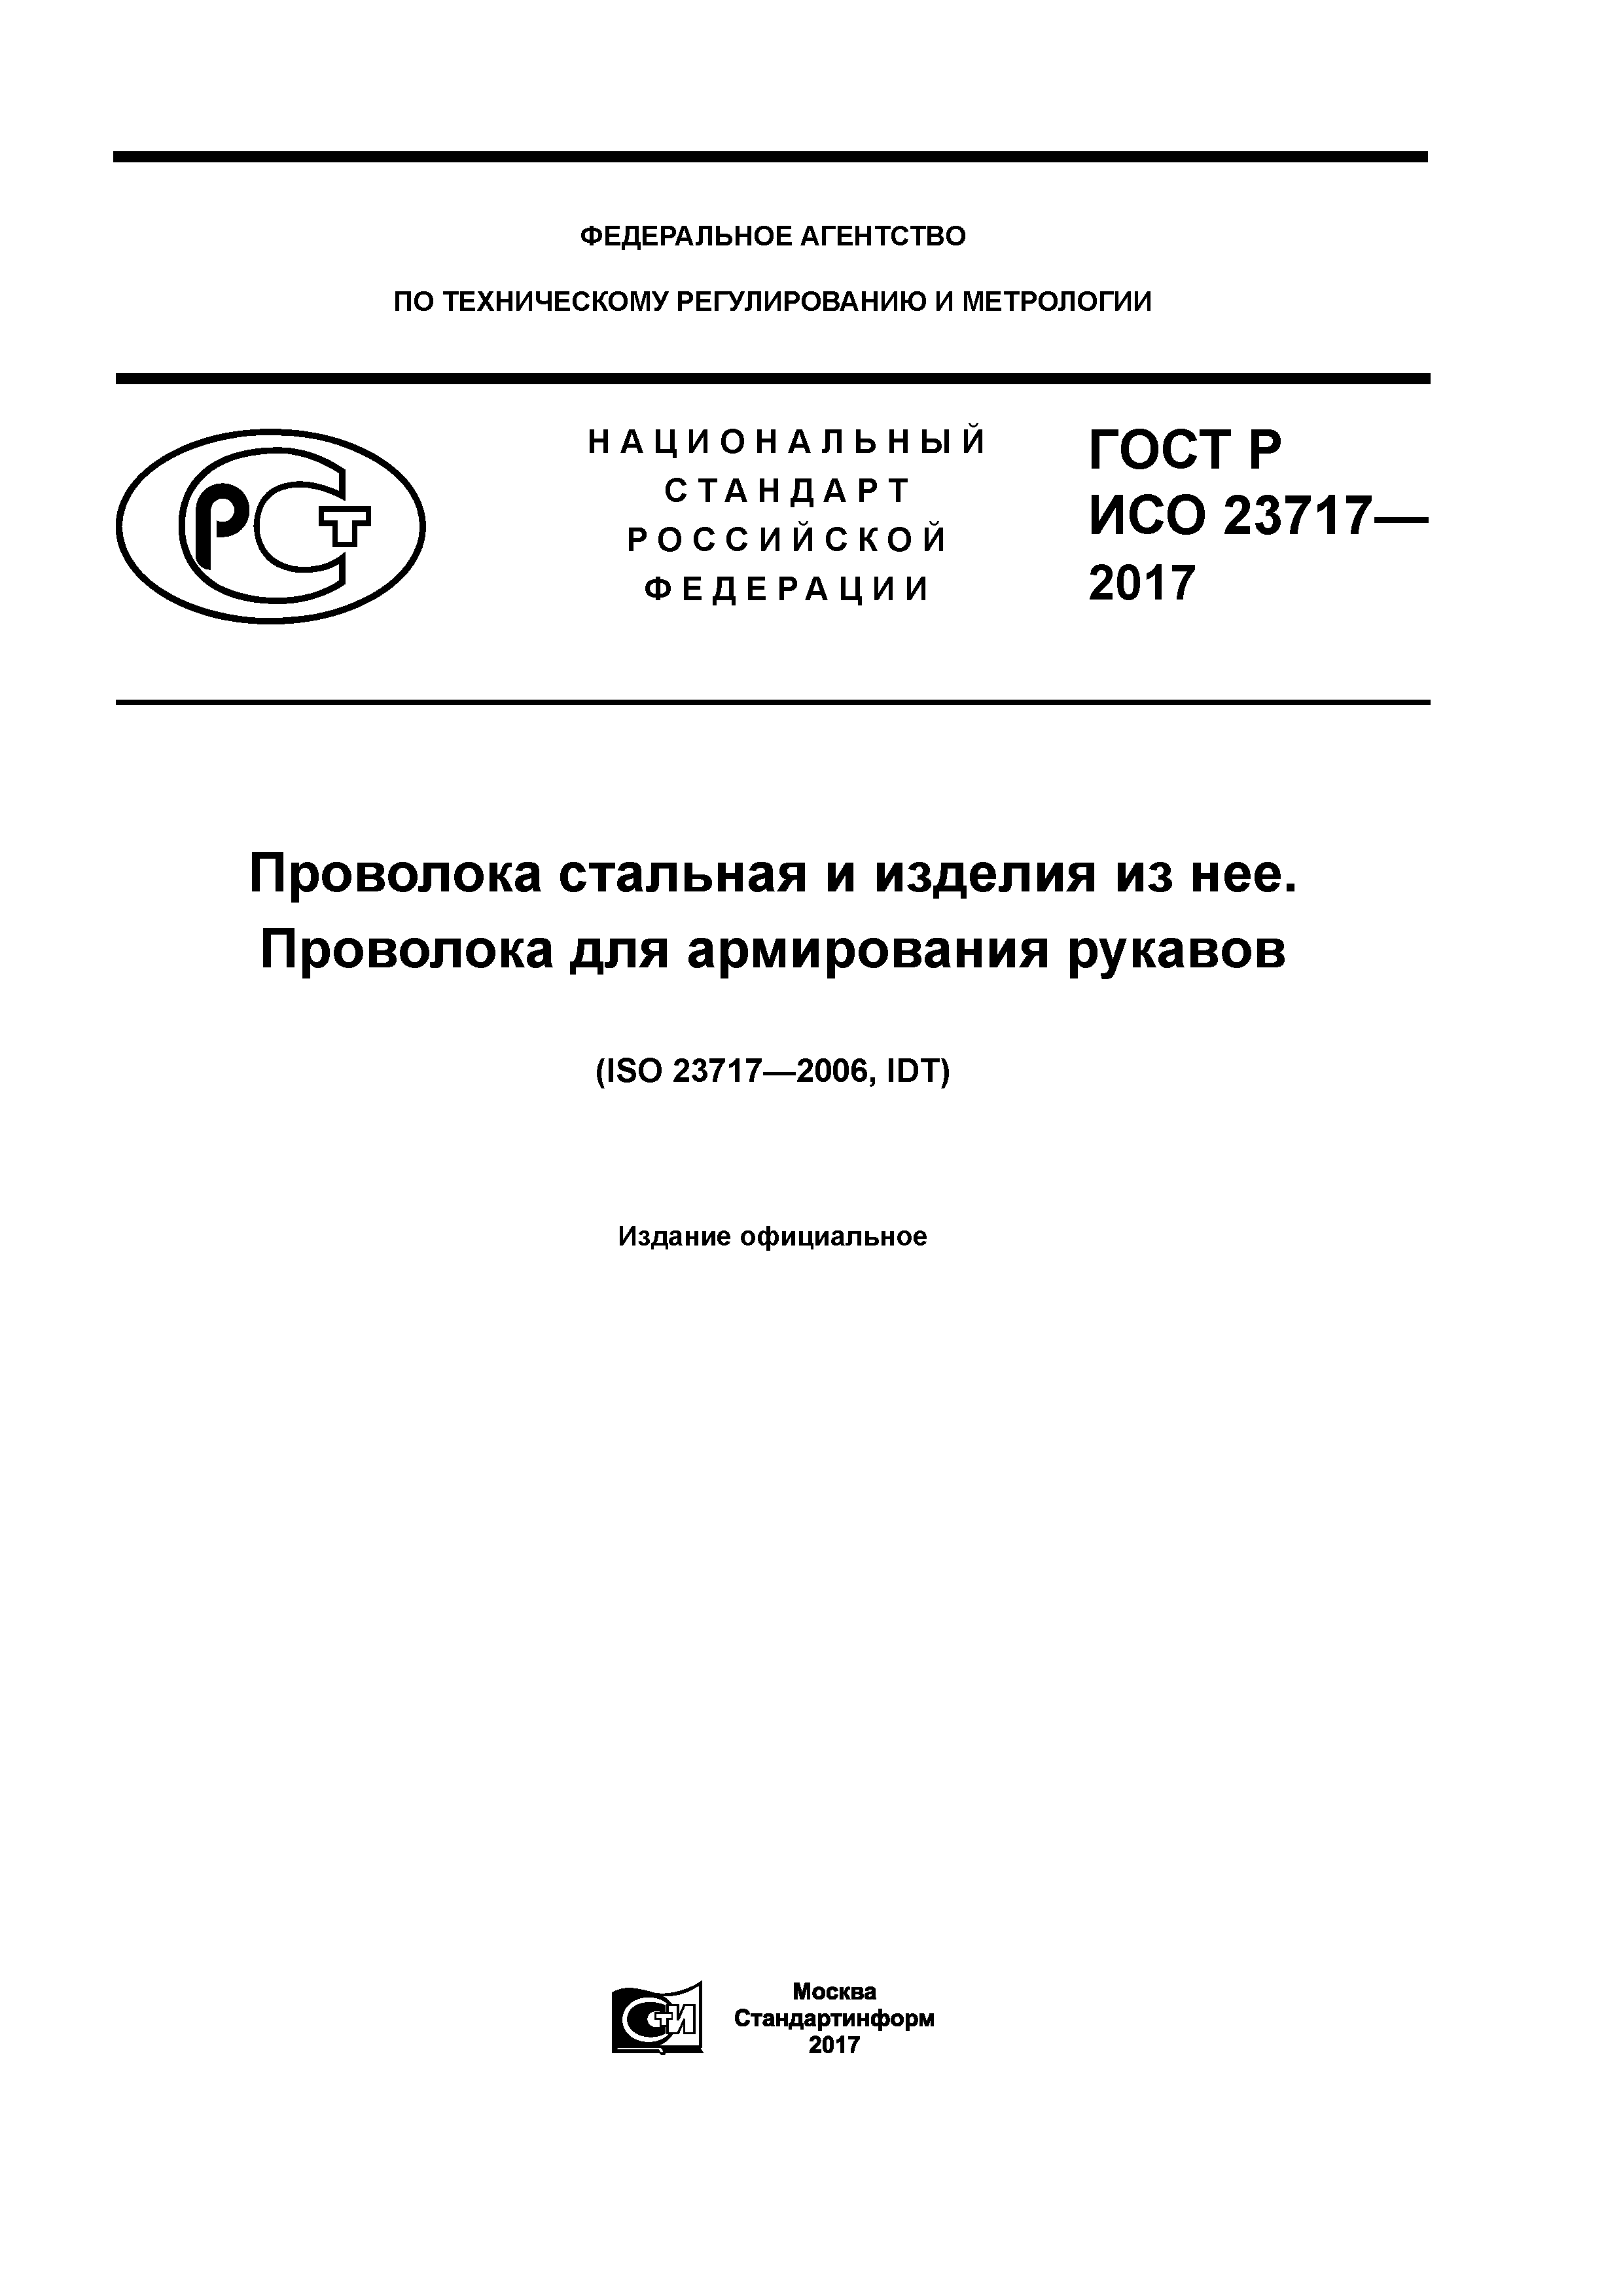 ГОСТ Р ИСО 23717-2017